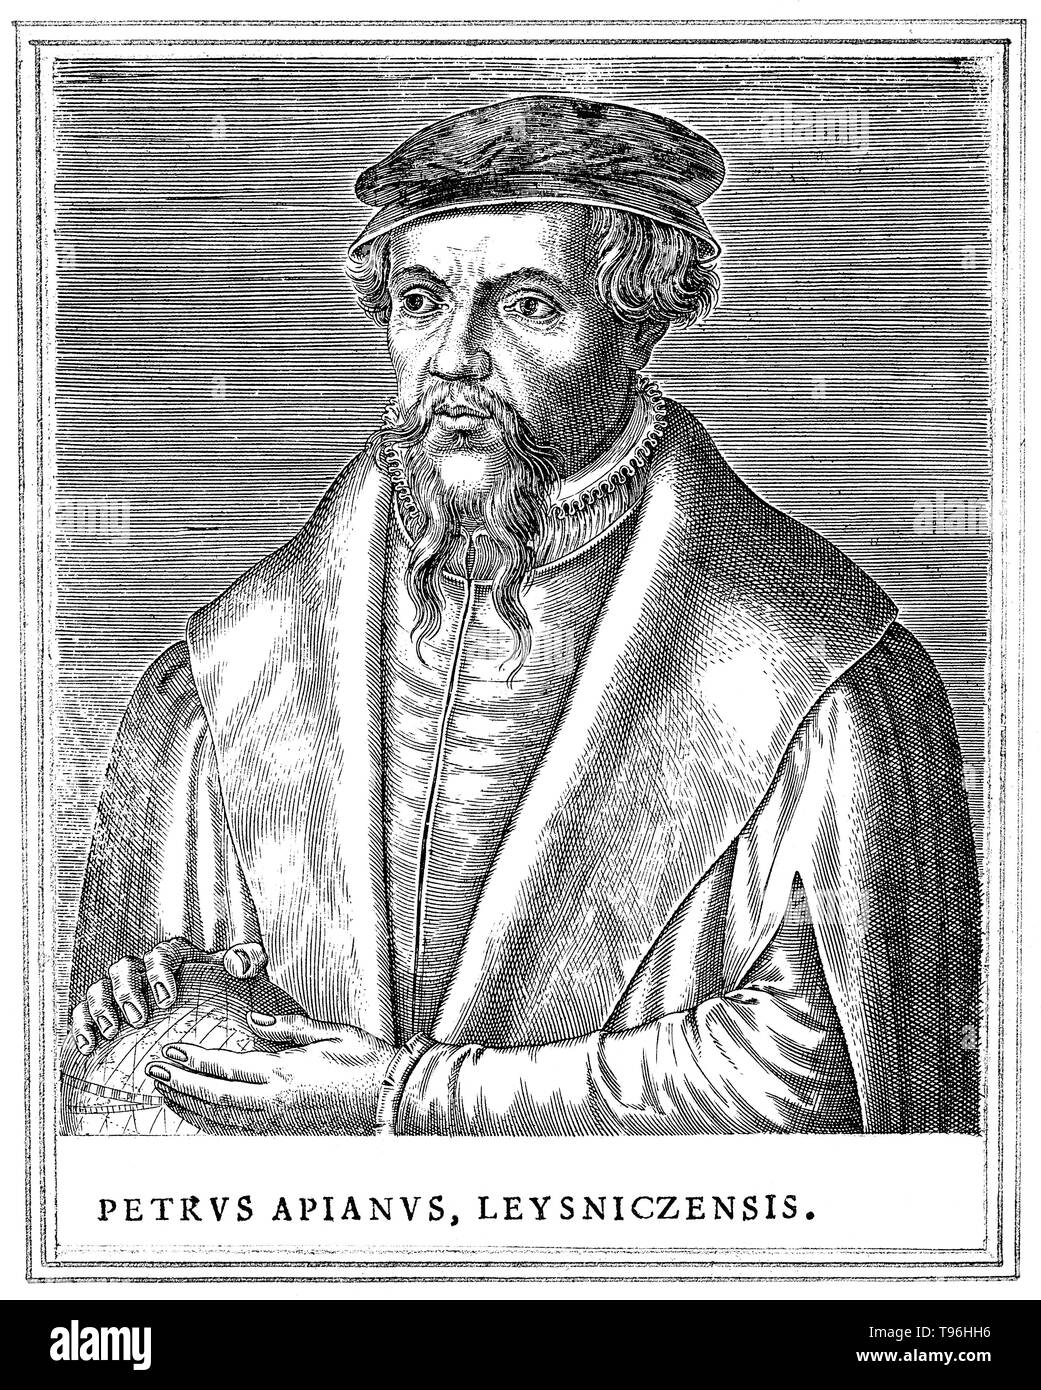 Petrus Apianus (16 de abril de 1495 - 21 de abril de 1552) fue un humanista alemán, conocido por sus trabajos en matemáticas, astronomía y cartografía. En 1524 se produjo su Cosmographicus liber, un respetado trabajo sobre astronomía y navegación que fue a ver al menos 30 reimpresiones en 14 idiomas. En 1527 él publicó una variación del Triángulo de Pascal, y en 1534 una tabla de senos. En 1531, observó un cometa y descubrió que una cola del cometa siempre apunte lejos del sol. Foto de stock